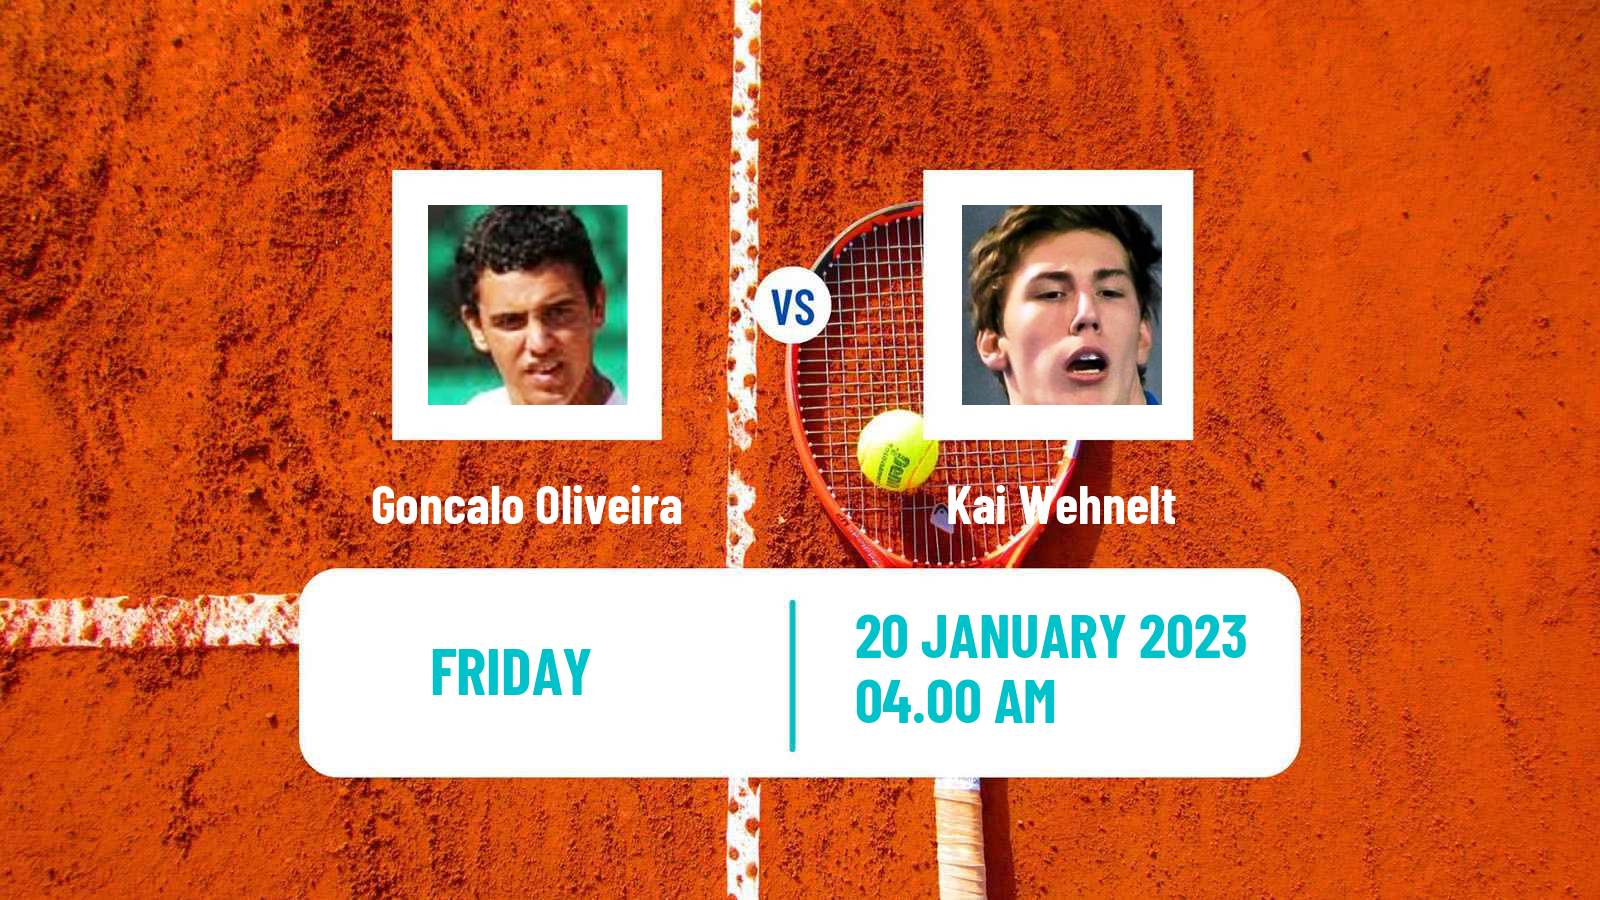 Tennis ITF Tournaments Goncalo Oliveira - Kai Wehnelt